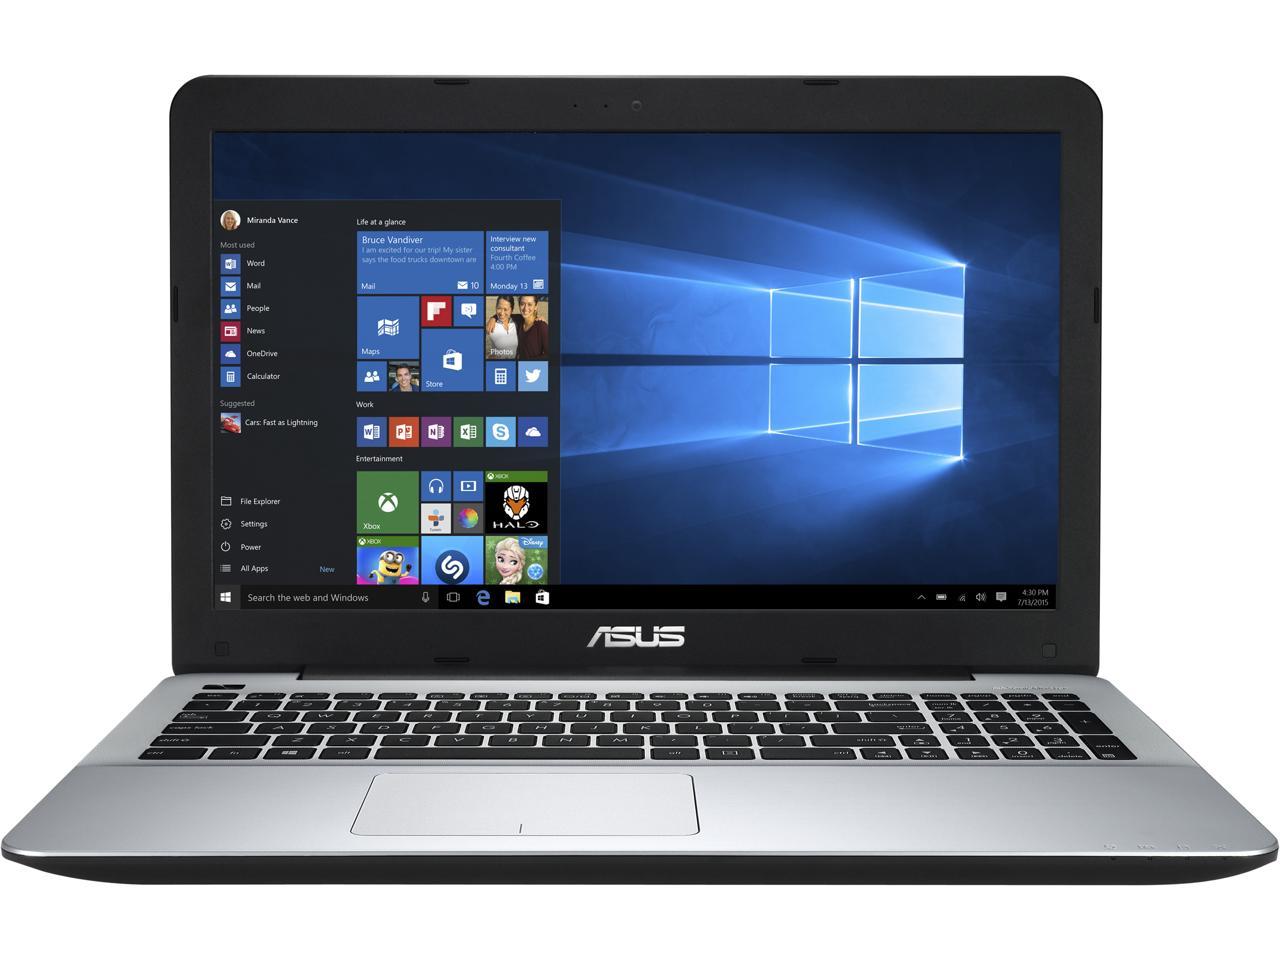 ASUS Laptop A555DG-EHFX AMD FX-8800P 